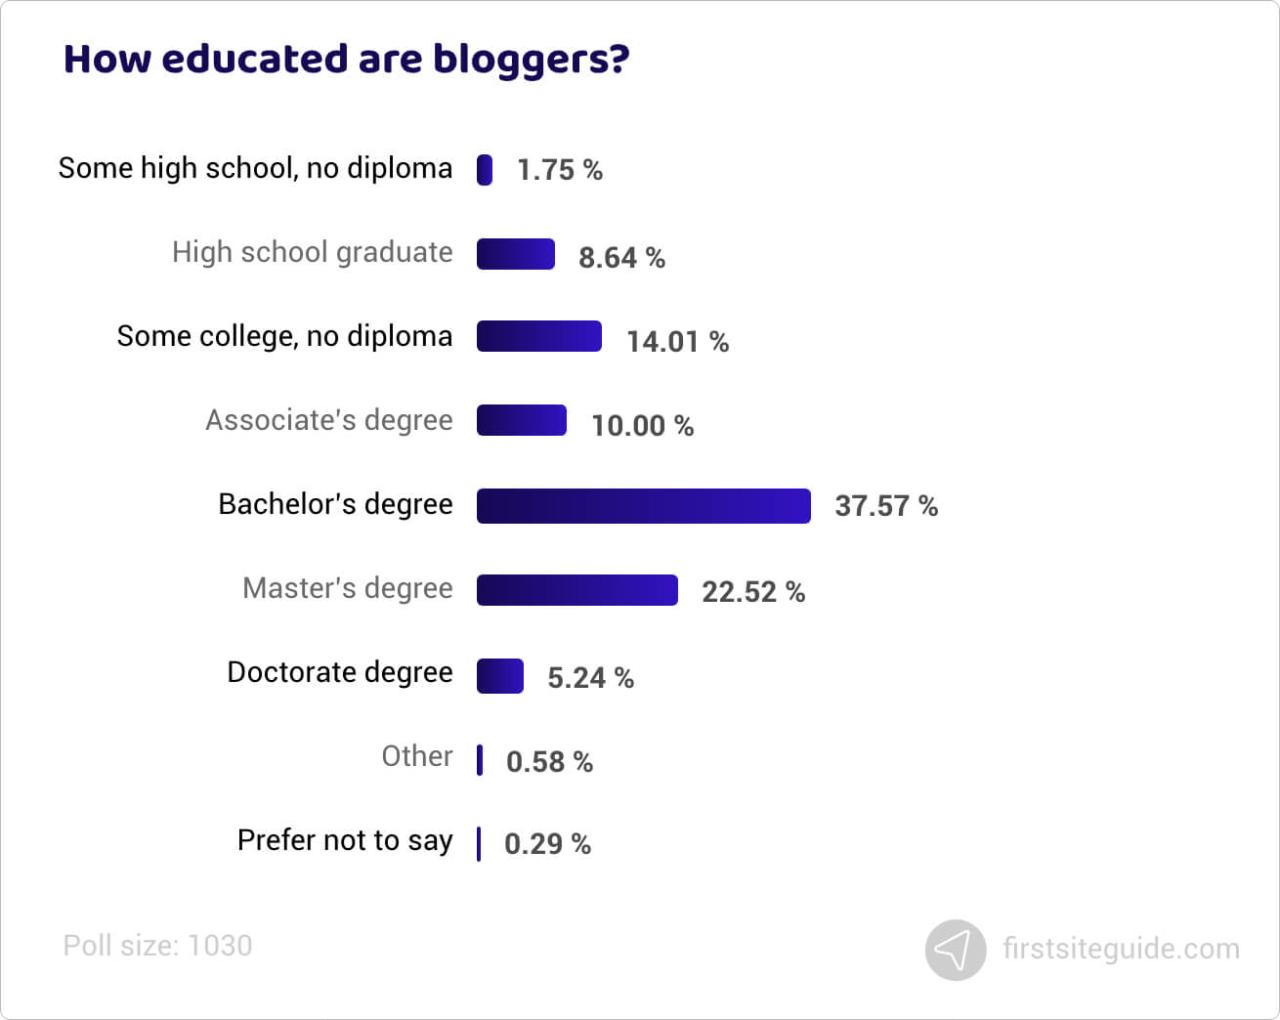 ¿Qué nivel de educación tienen los blogueros?